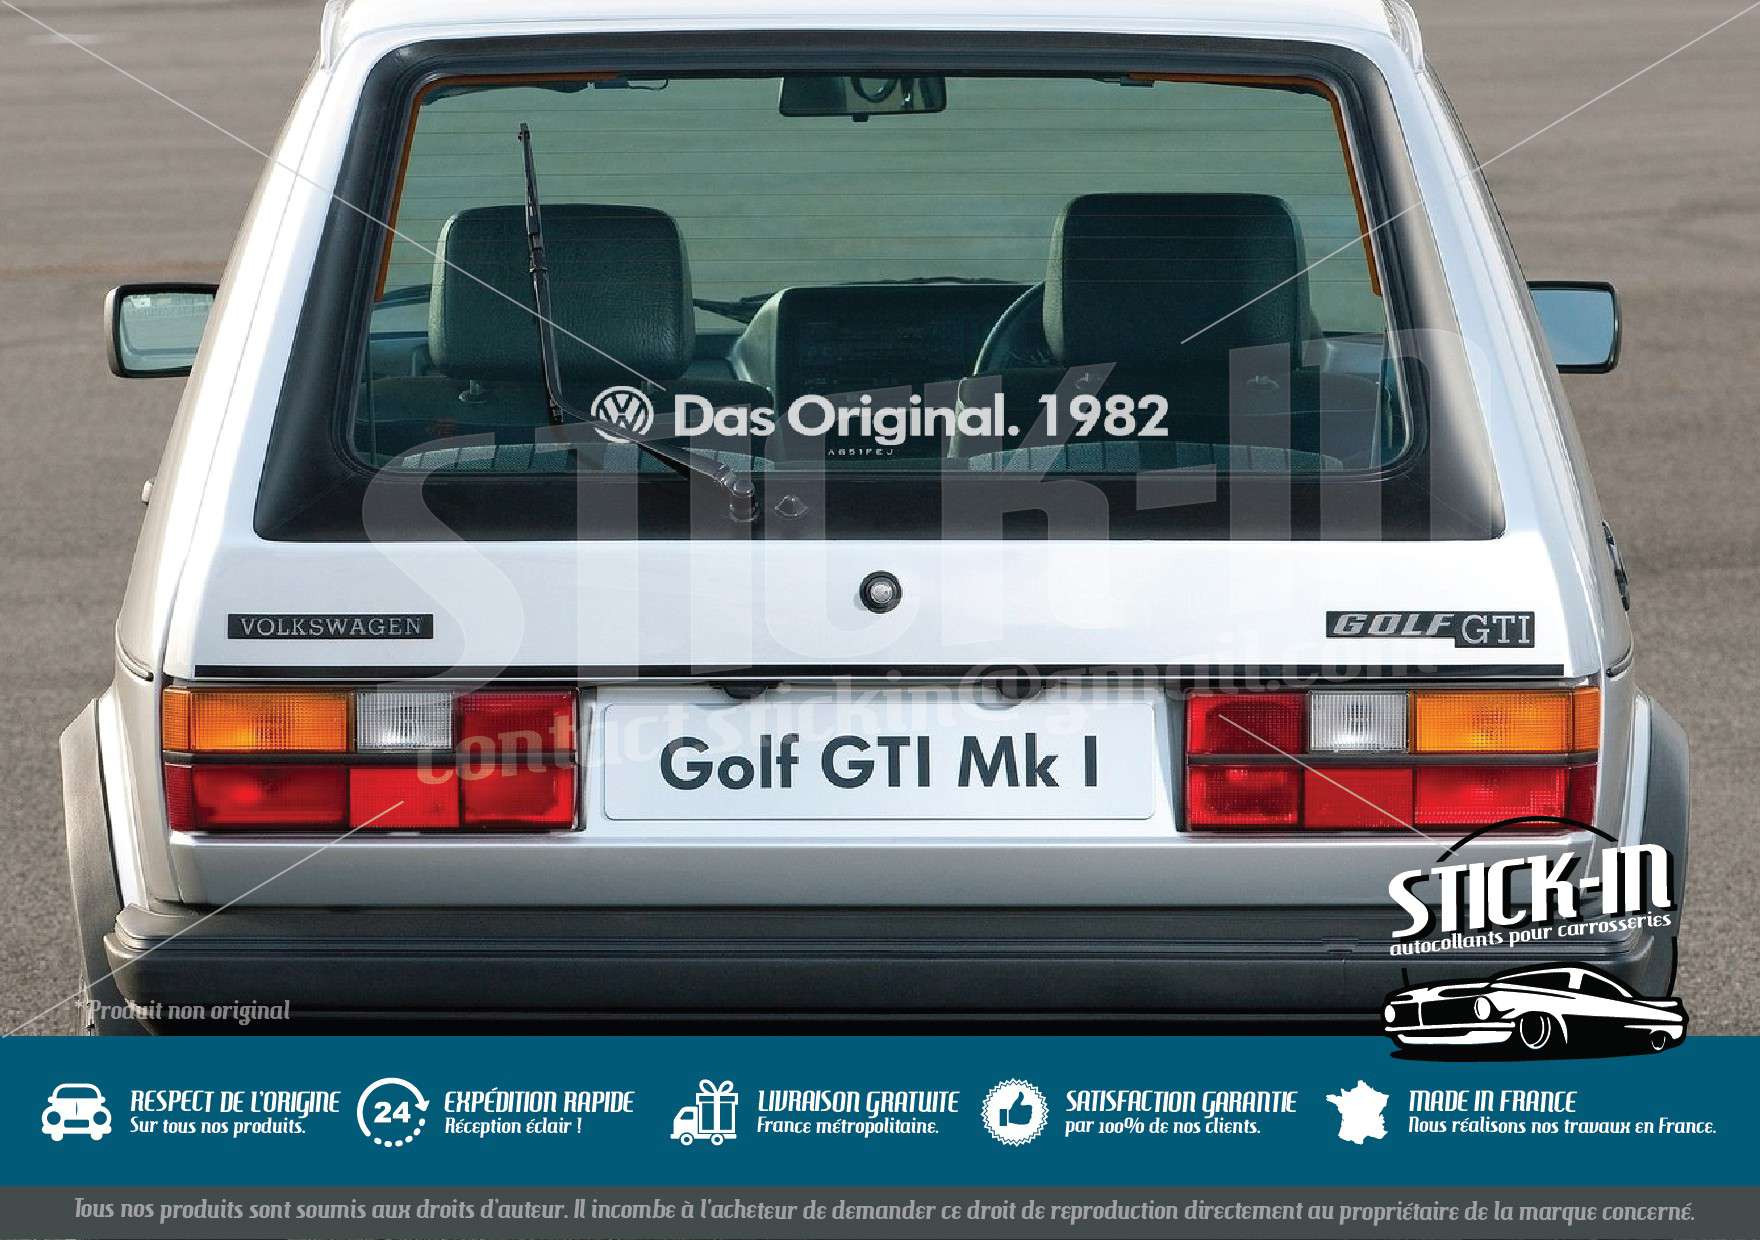 https://shop.stick-in.fr/504-thickbox_default/volkswagen-stickers-das-original-year-golf-gti-combi-cox-old.jpg